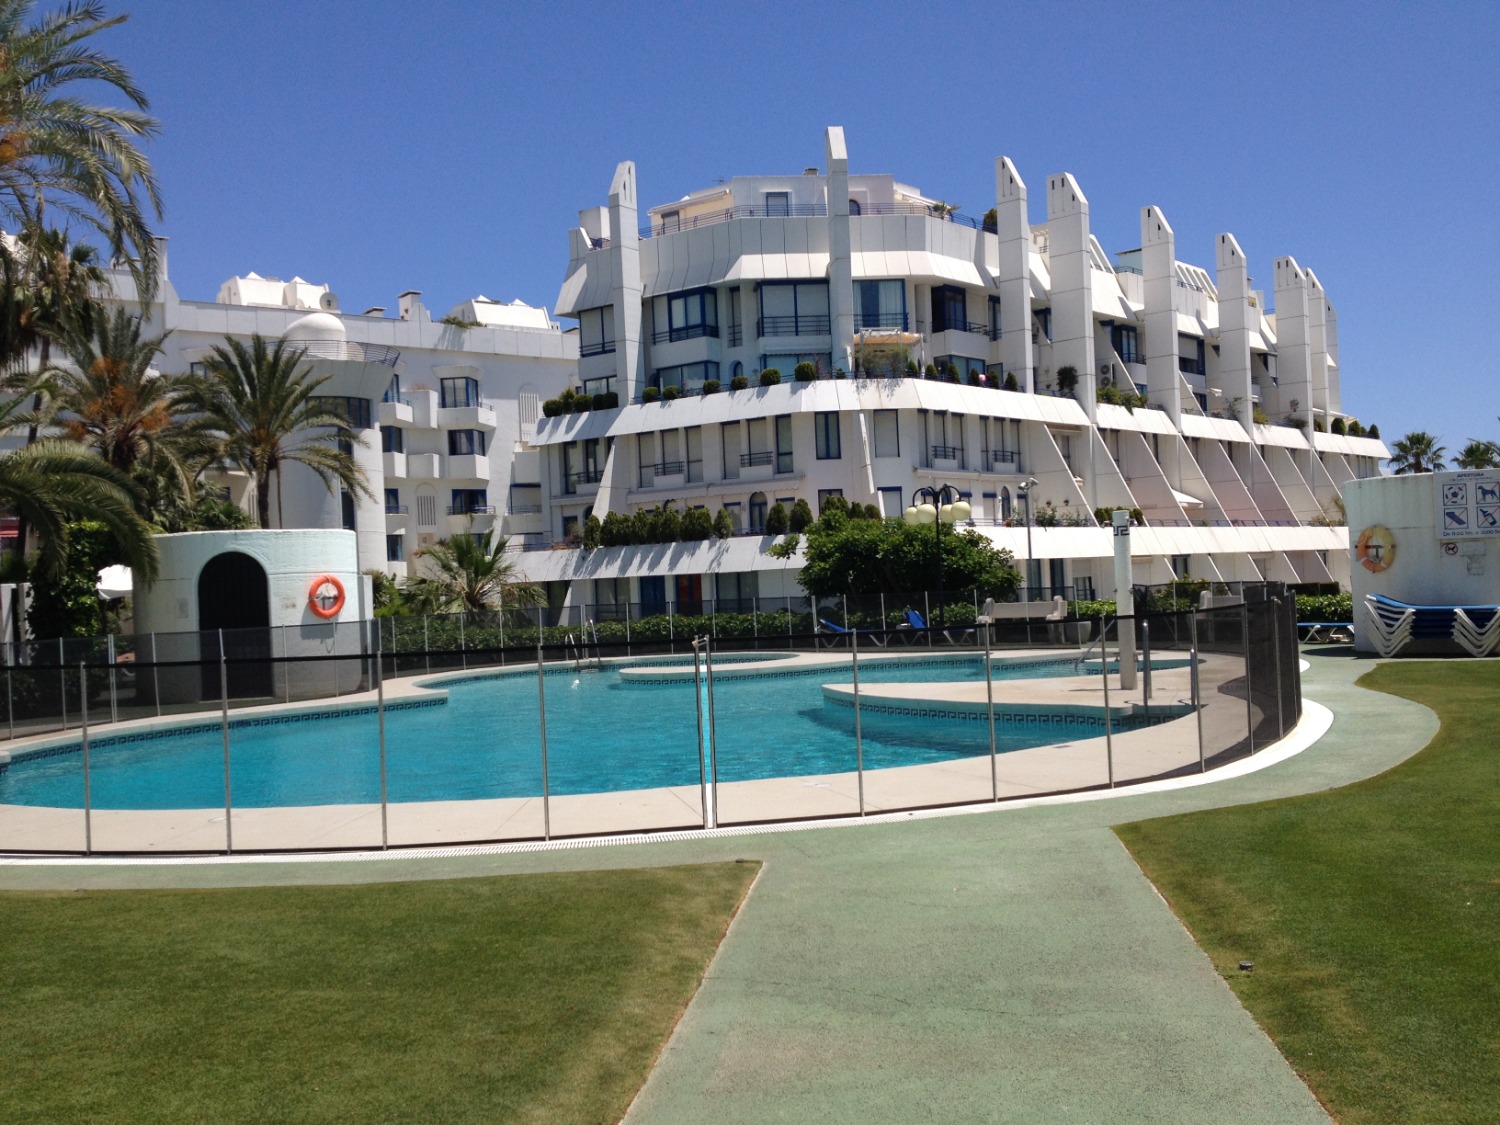 Huur. Duplex met 2 slaapkamers. 1 minuut lopen van het strand. Marbella.